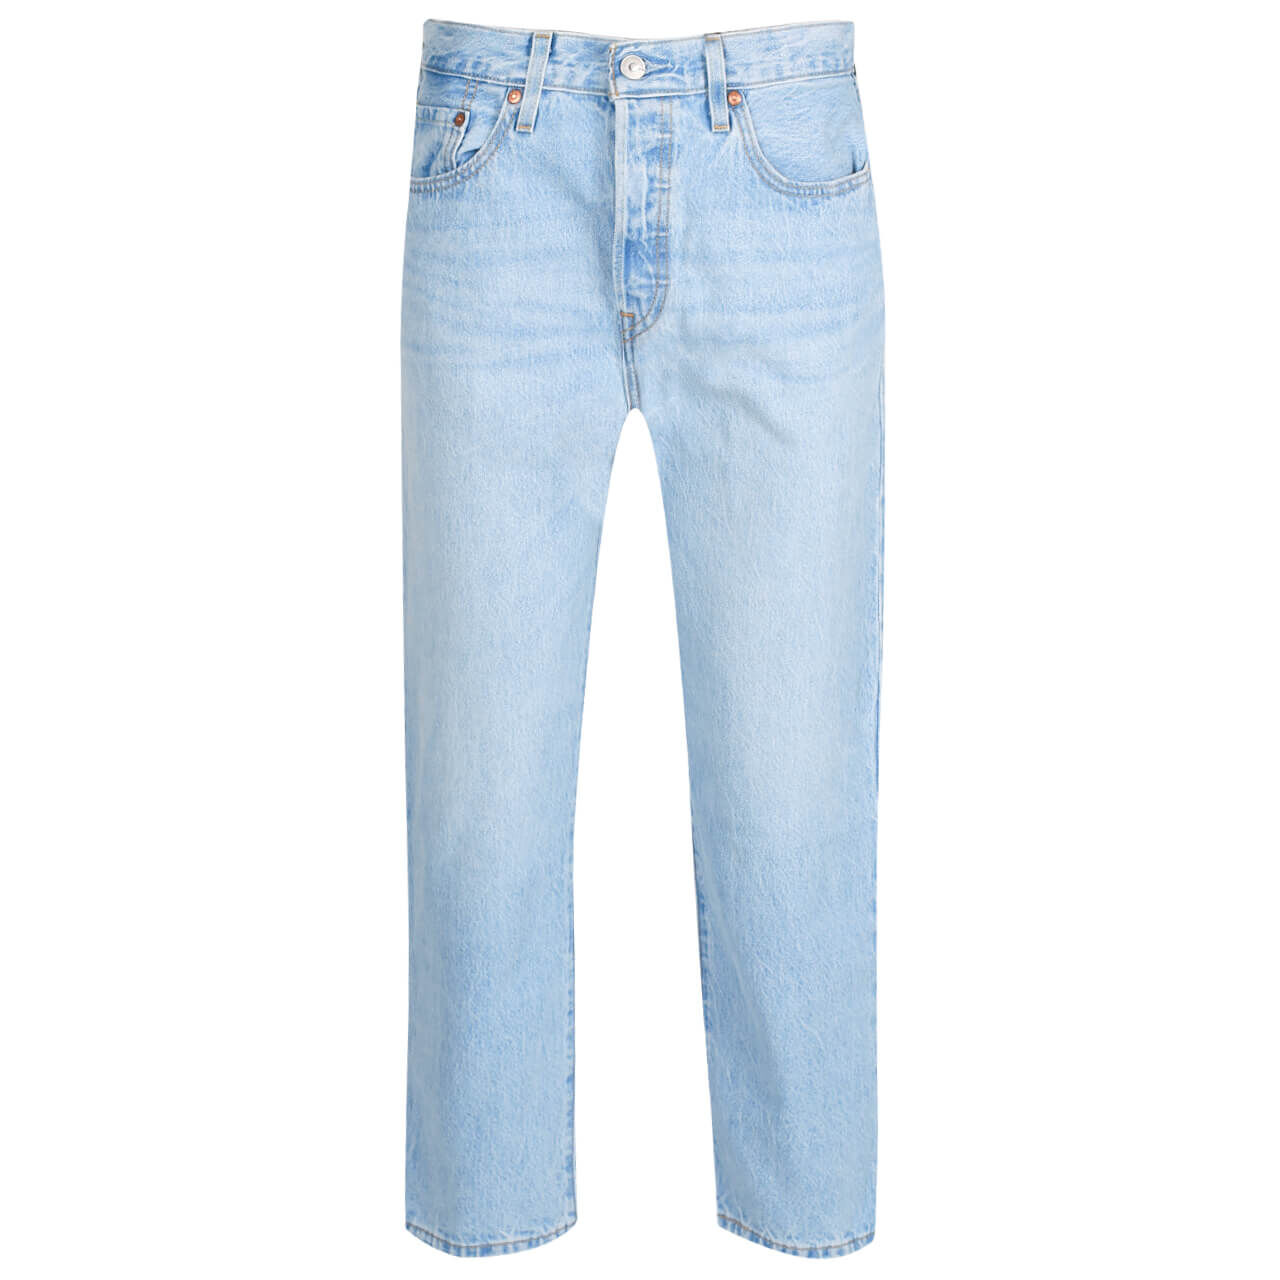 Levis Jeans 501 Cropped 7/8 für Damen in Hellblau, FarbNr.: 0124